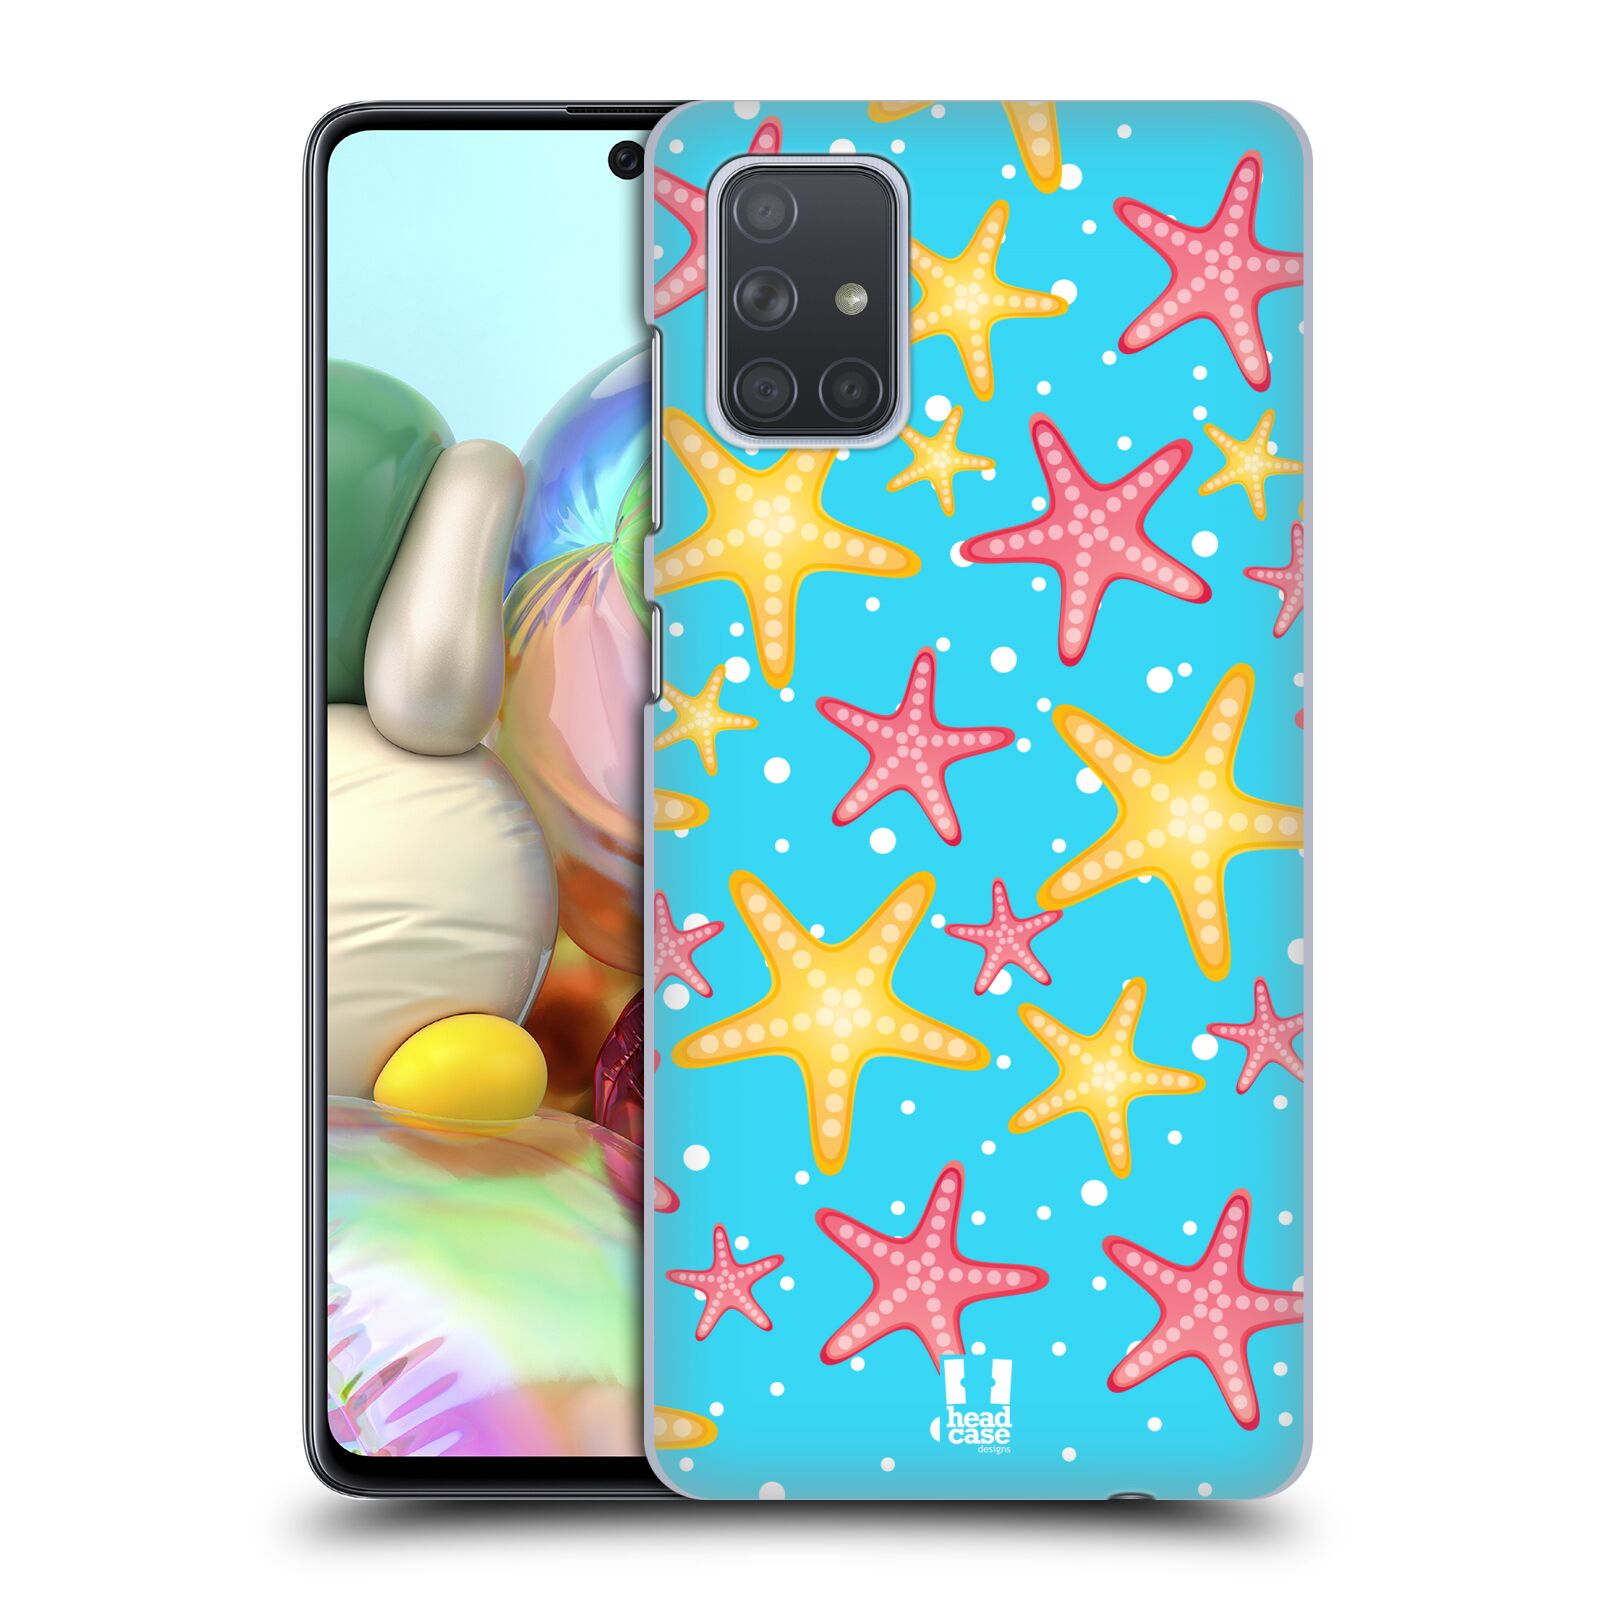 Zadní obal pro mobil Samsung Galaxy A71 - HEAD CASE - kreslený mořský vzor hvězda